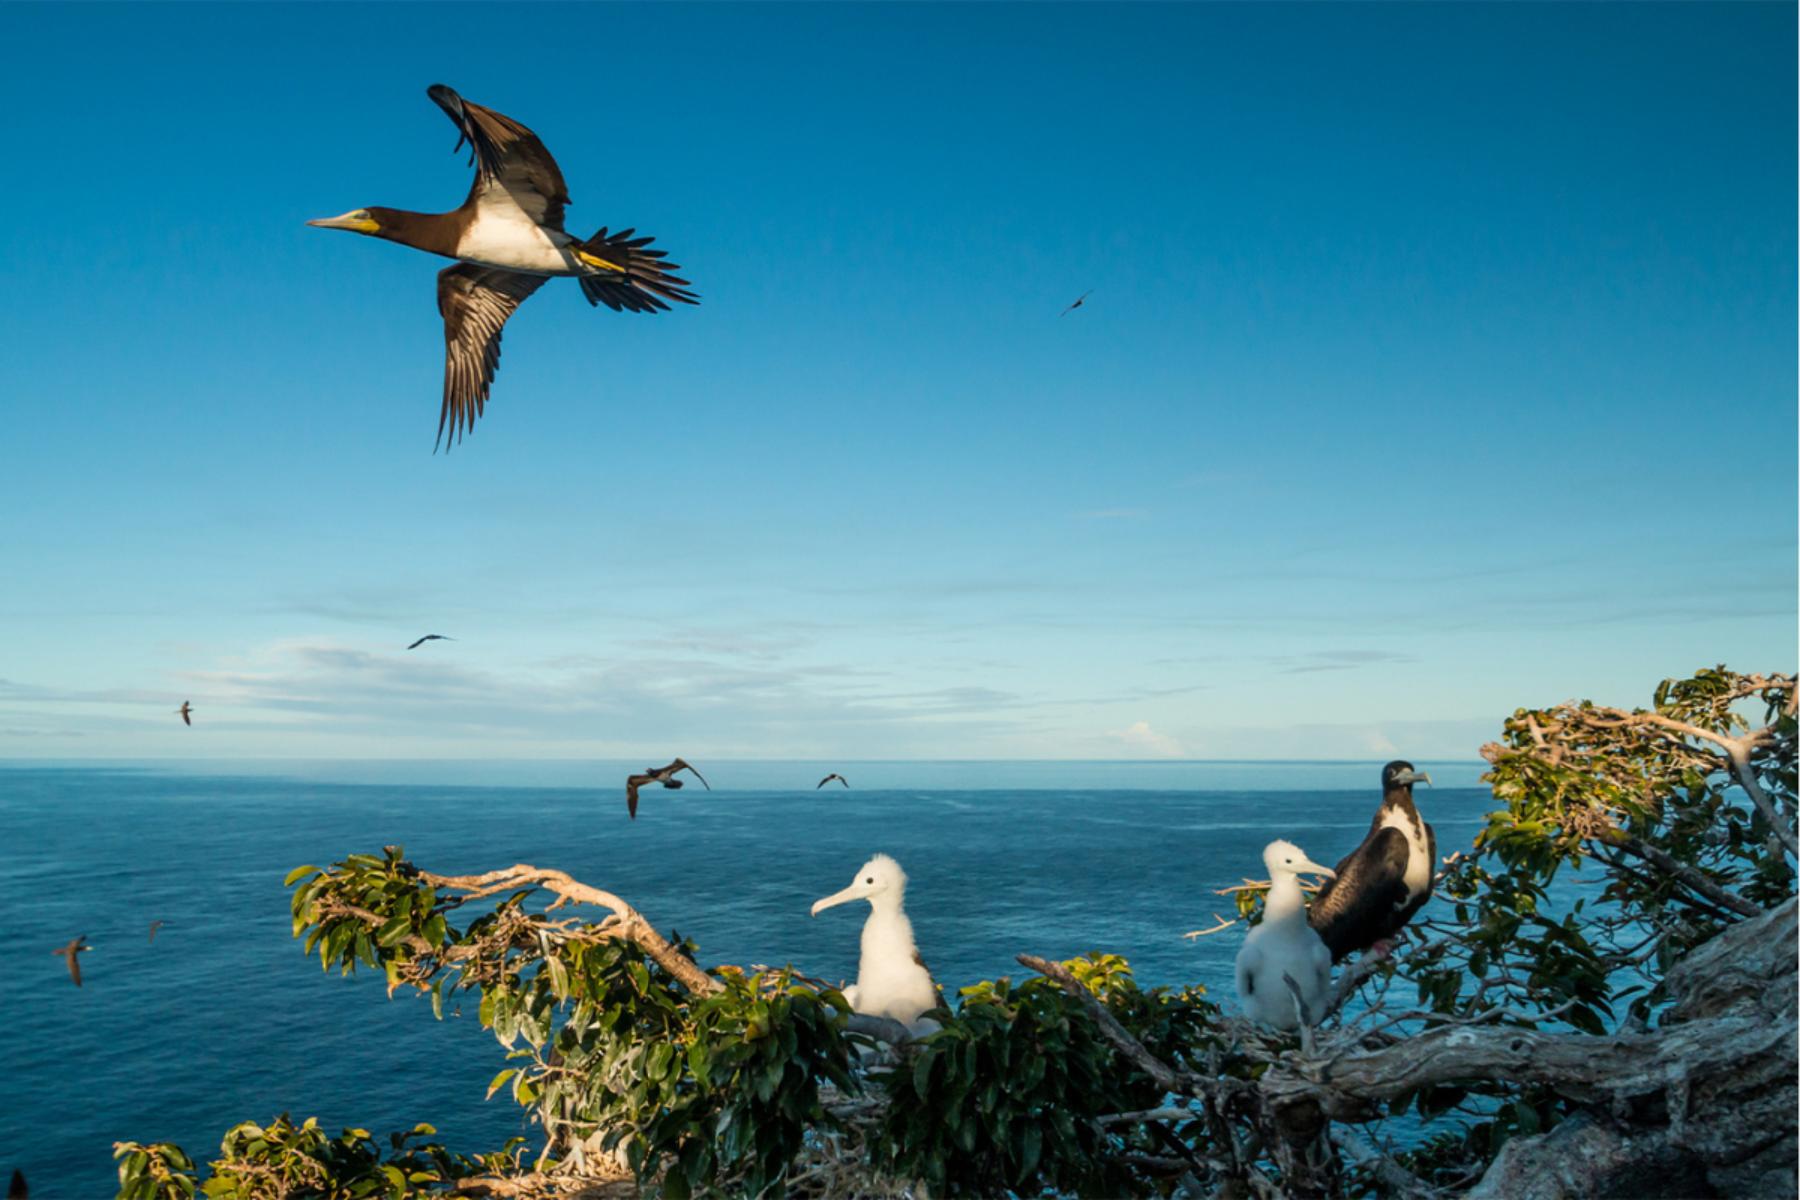 تصویر اصلی: پرندگان دریایی در جزیره ردوندا لانه می کنند. اعتبار: اد مارشال / جانوران و فلور